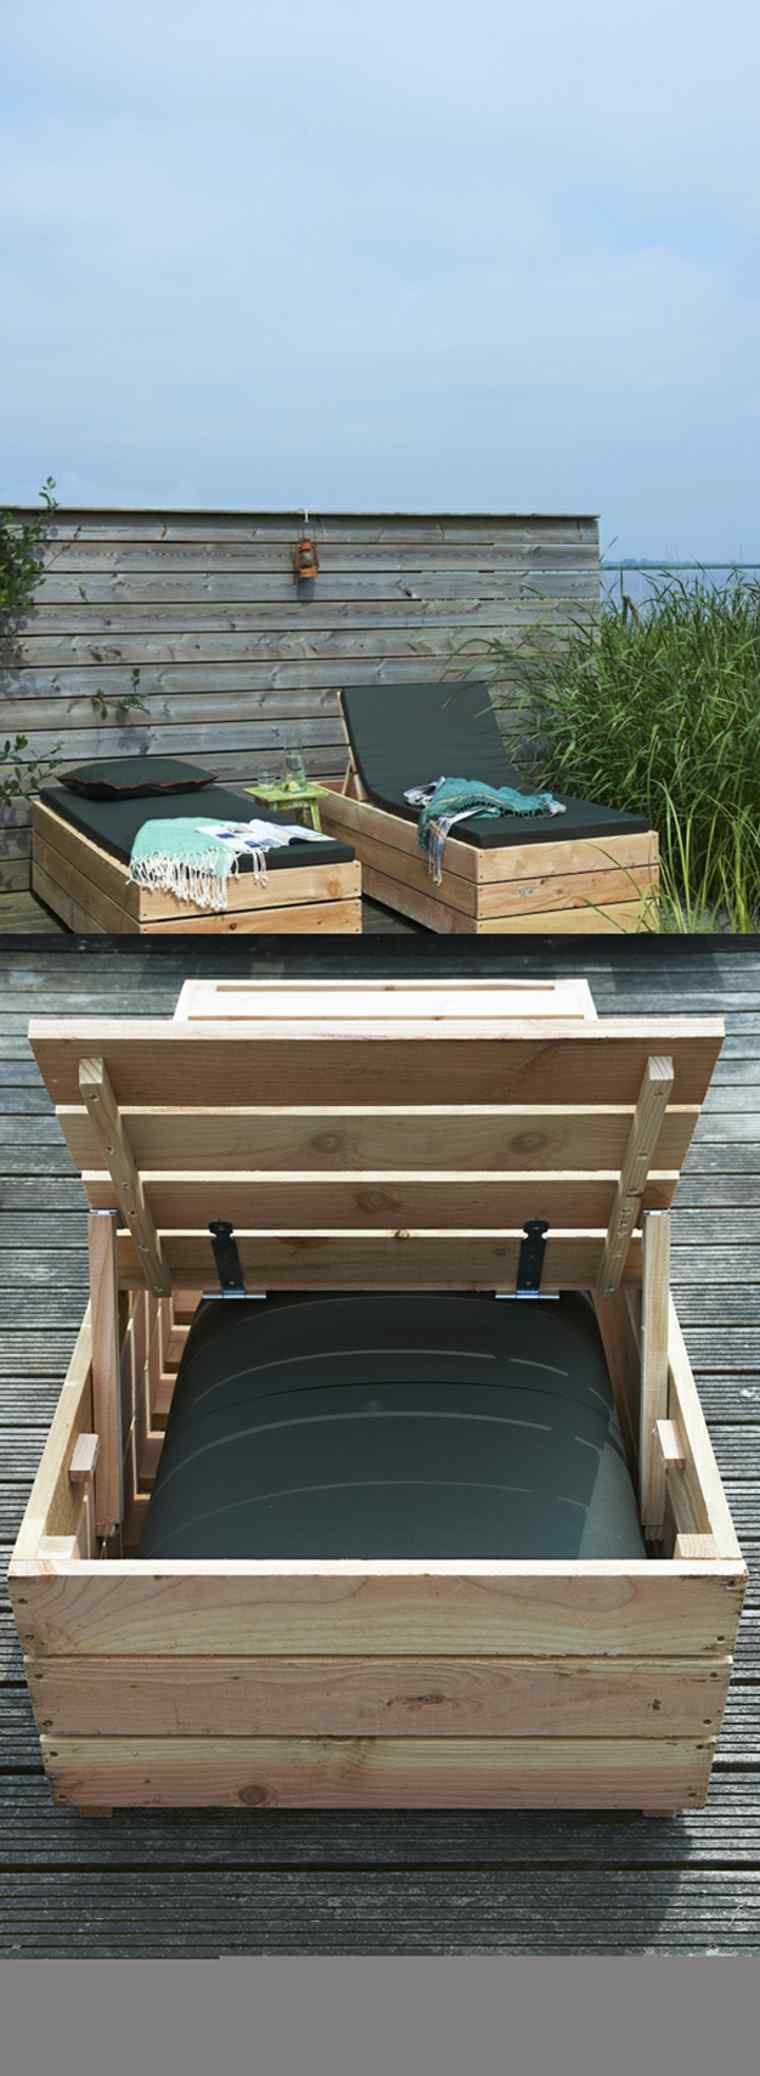 banc jardin bois idée recyclage diy mobilier palette bois banc coussins noirs